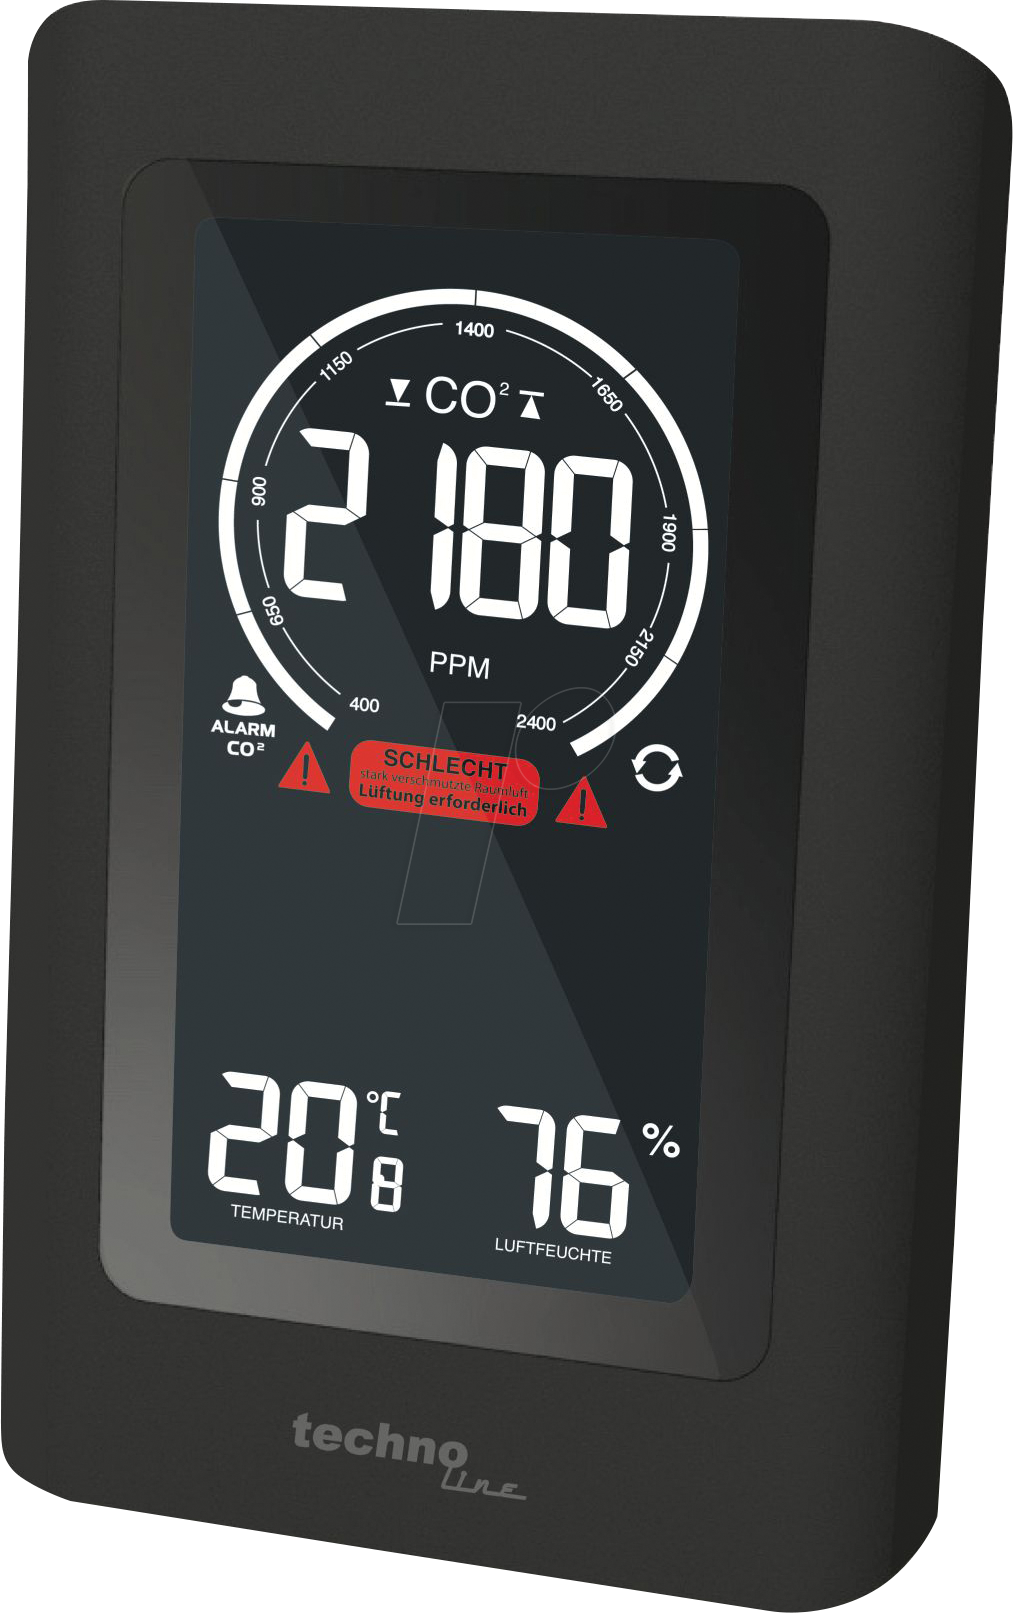 TL WL 1030 - CO2-Messgerät von TECHNOLINE